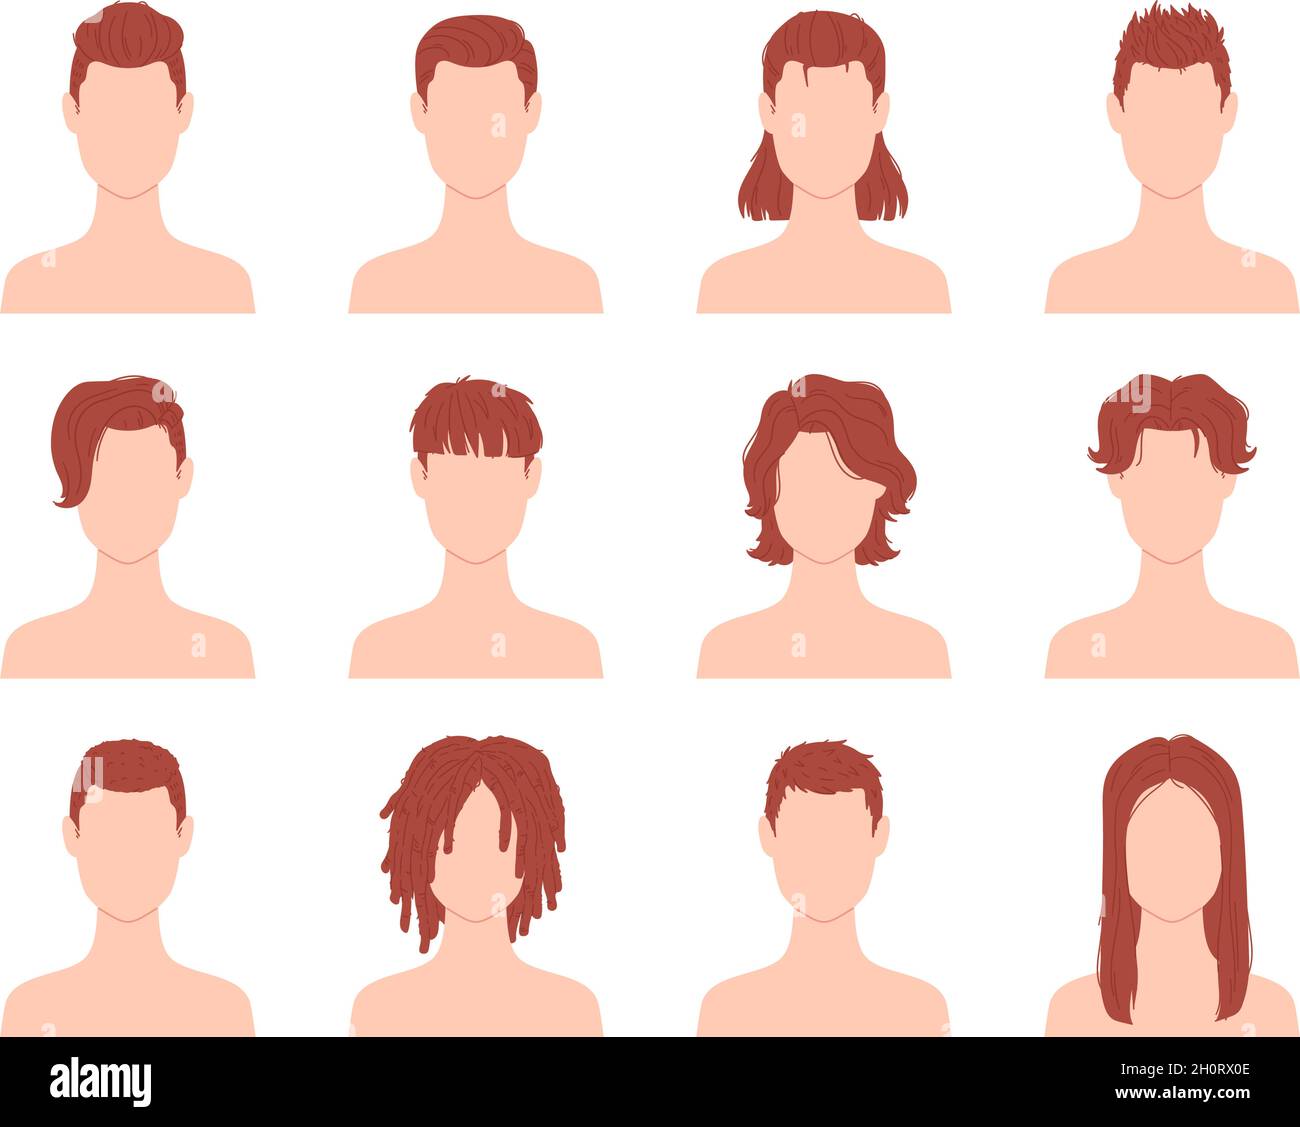 Cartoon-Frisuren für Männer oder Jungen mit kurzen, langen und lockigen Haaren. Männlicher Haarschnitt im Friseursalon. Flache Mode Mann Frisur Symbol Vektor-Set Stock Vektor